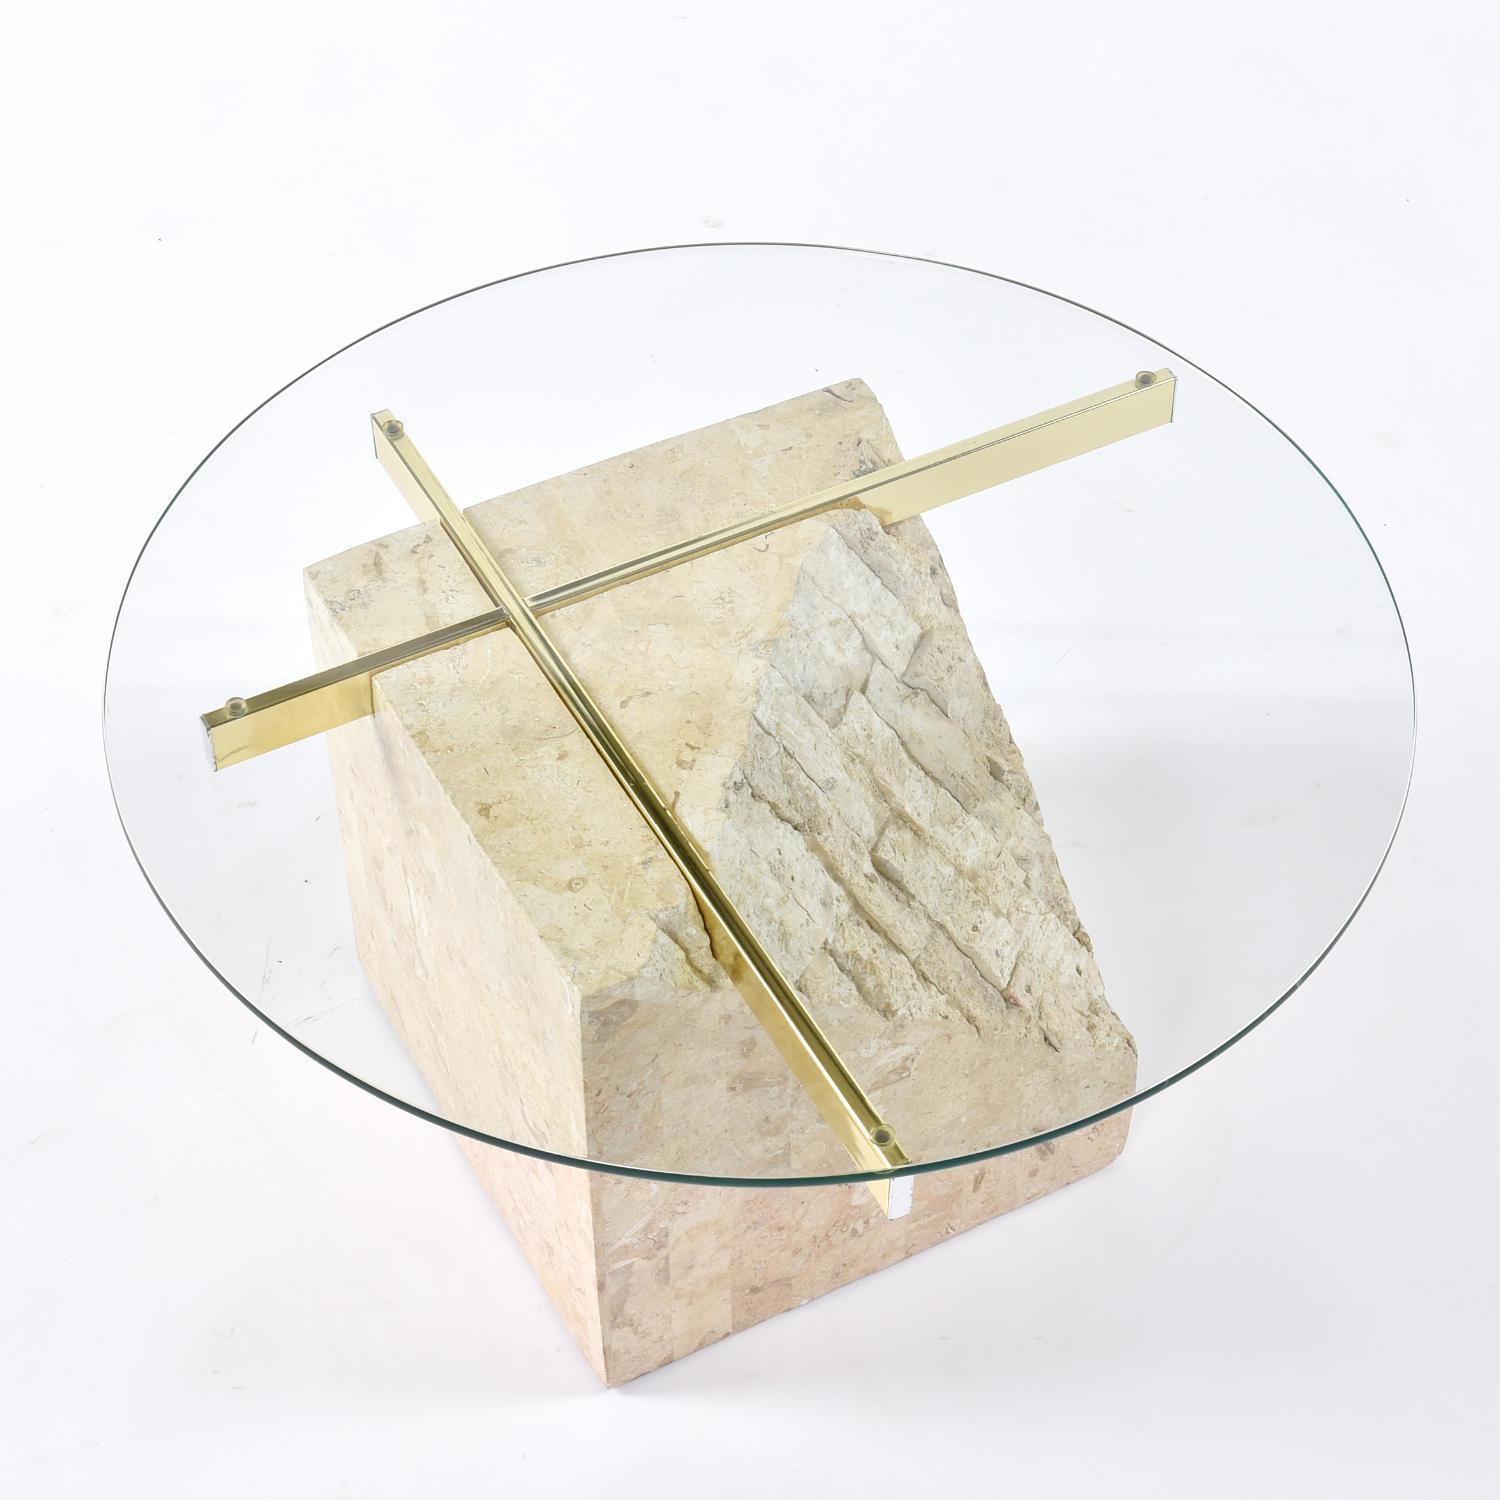 Si vous êtes intéressé par une taille ou une forme de plateau en verre personnalisée, veuillez nous en faire part et nous vous enverrons un devis.  

Table d'appoint en tesselles des années 1910 (années 1970-1980) avec plateau rond en verre. Cette